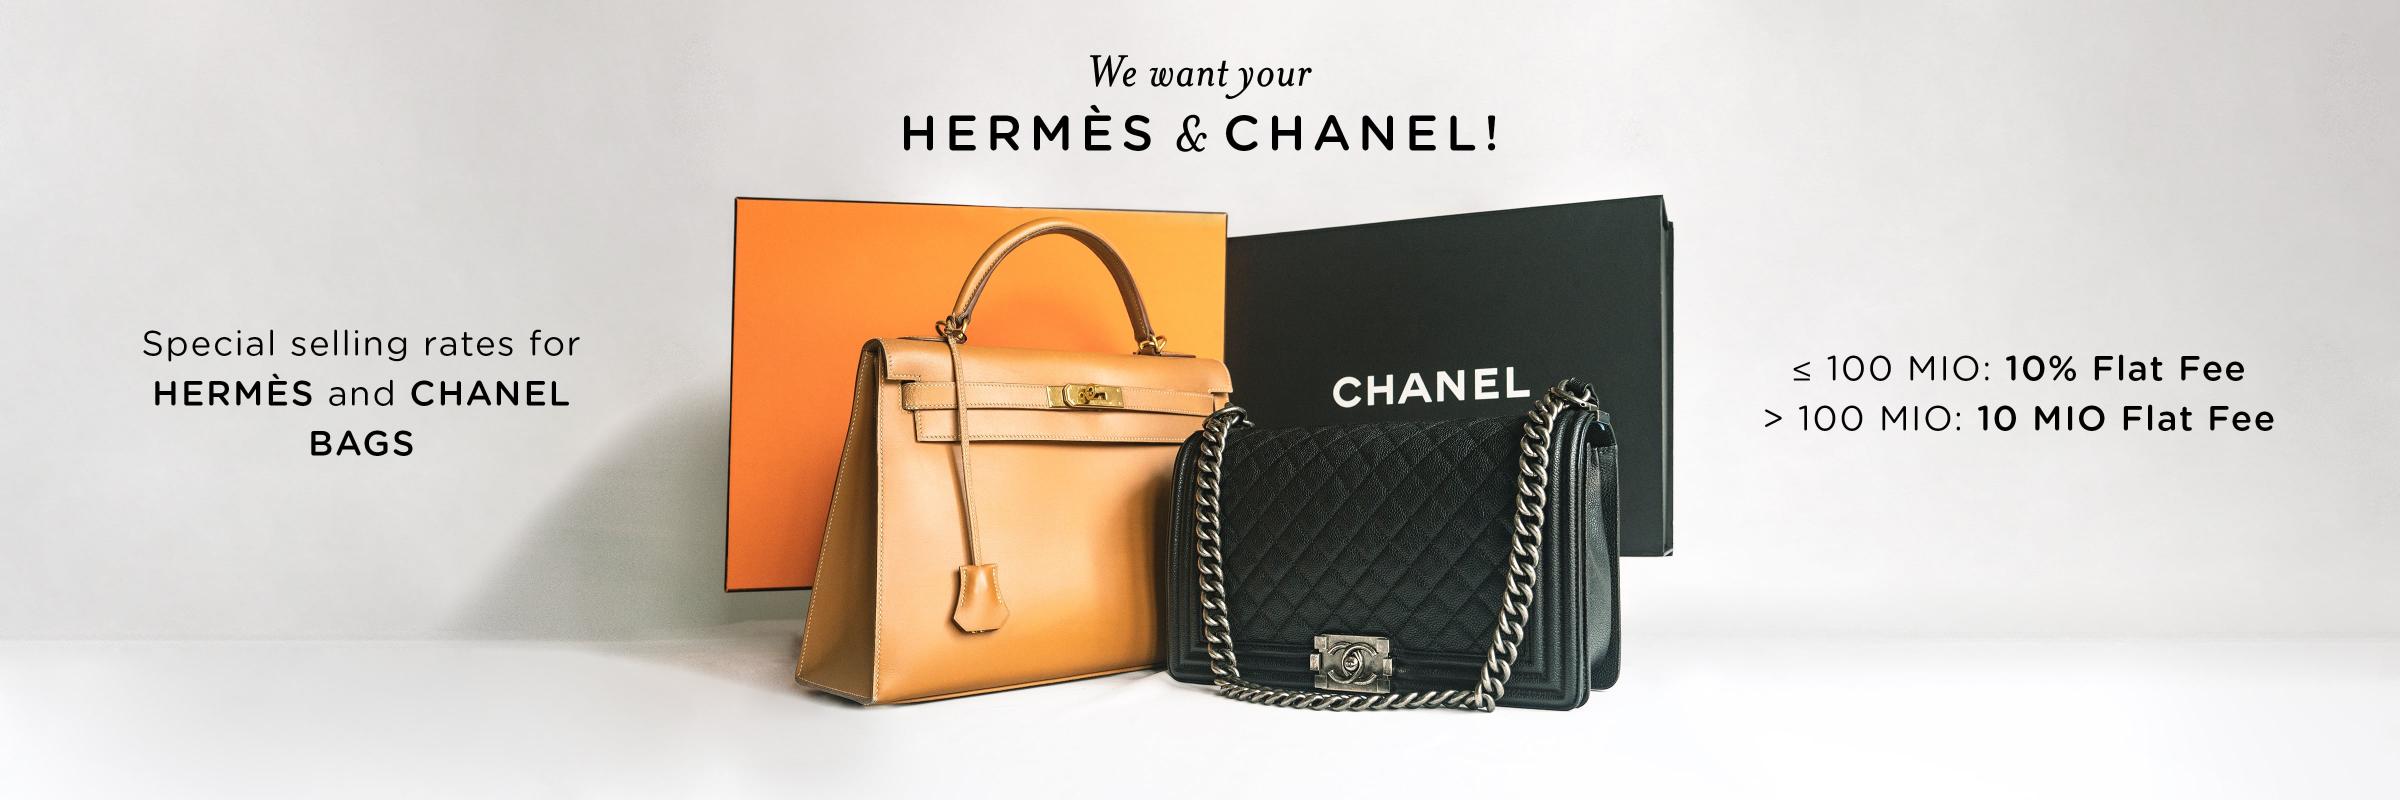 Hermes Chanel